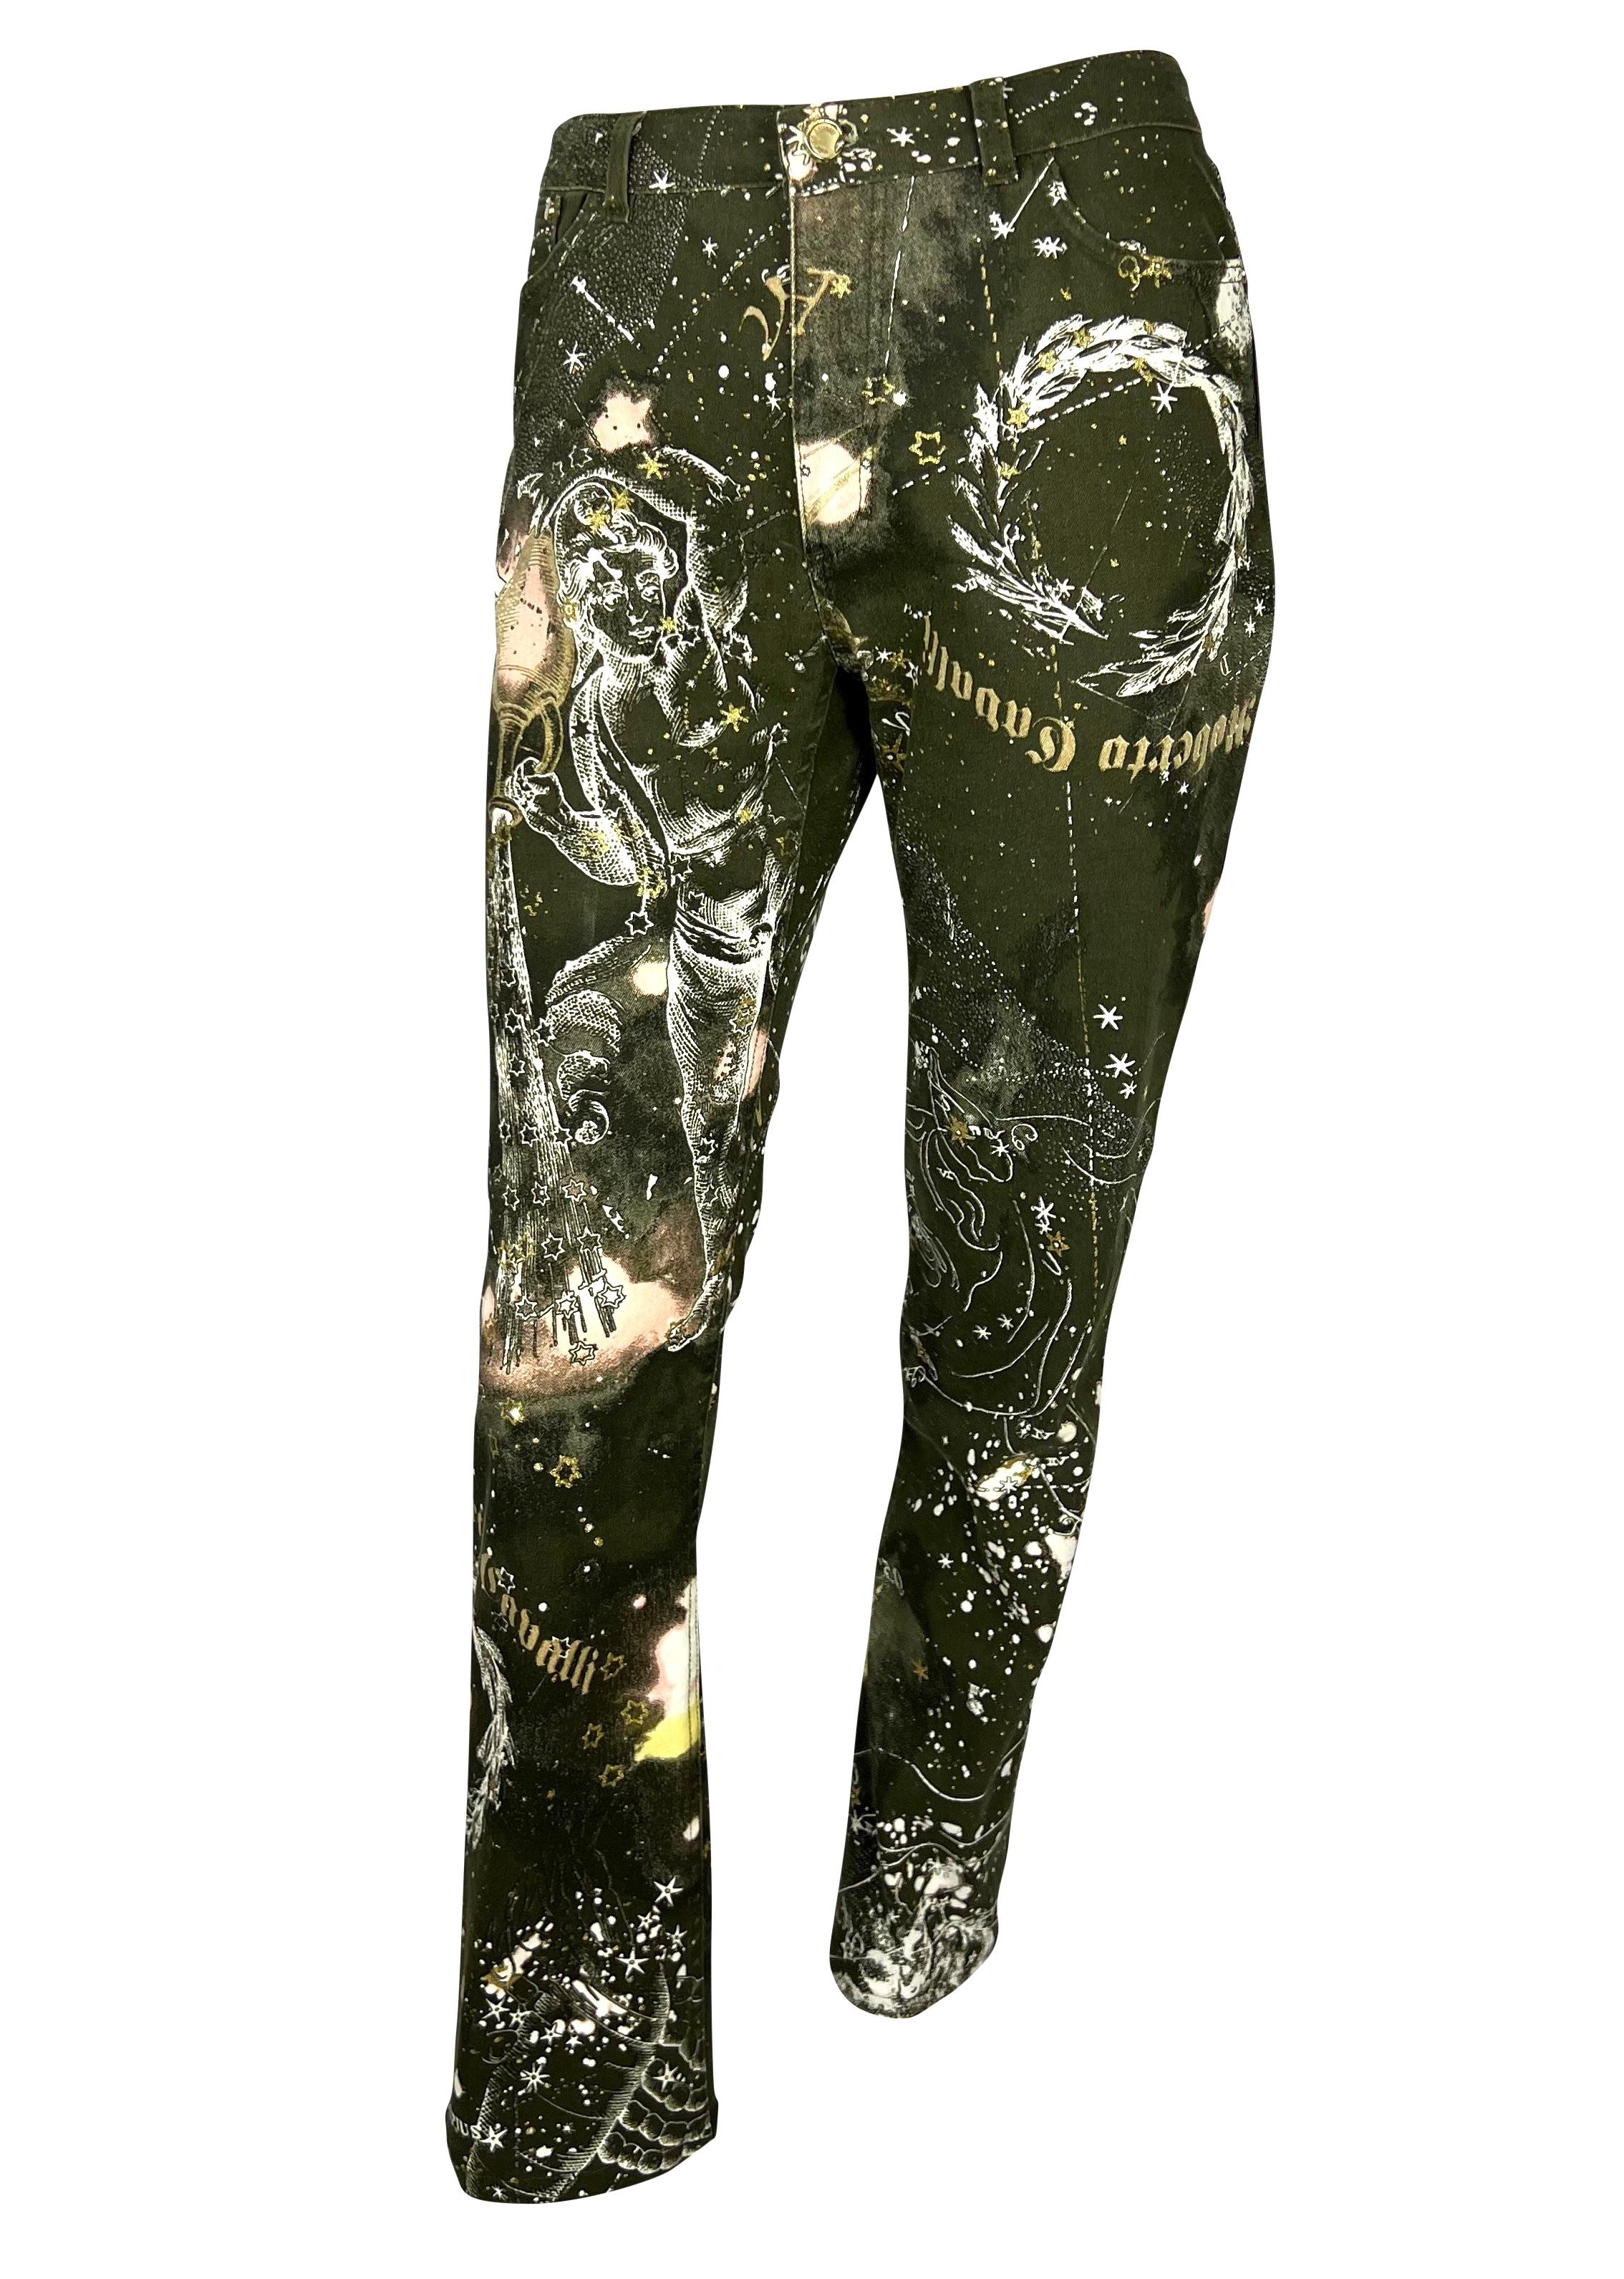 Nous vous présentons une paire de jeans à l'imprimé astrologique conçu par Roberto Cavalli. Depuis 2003, cet imprimé très prisé présente des constellations, des signes horoscopiques et des logos métalliques scintillants. Visitez notre vitrine pour